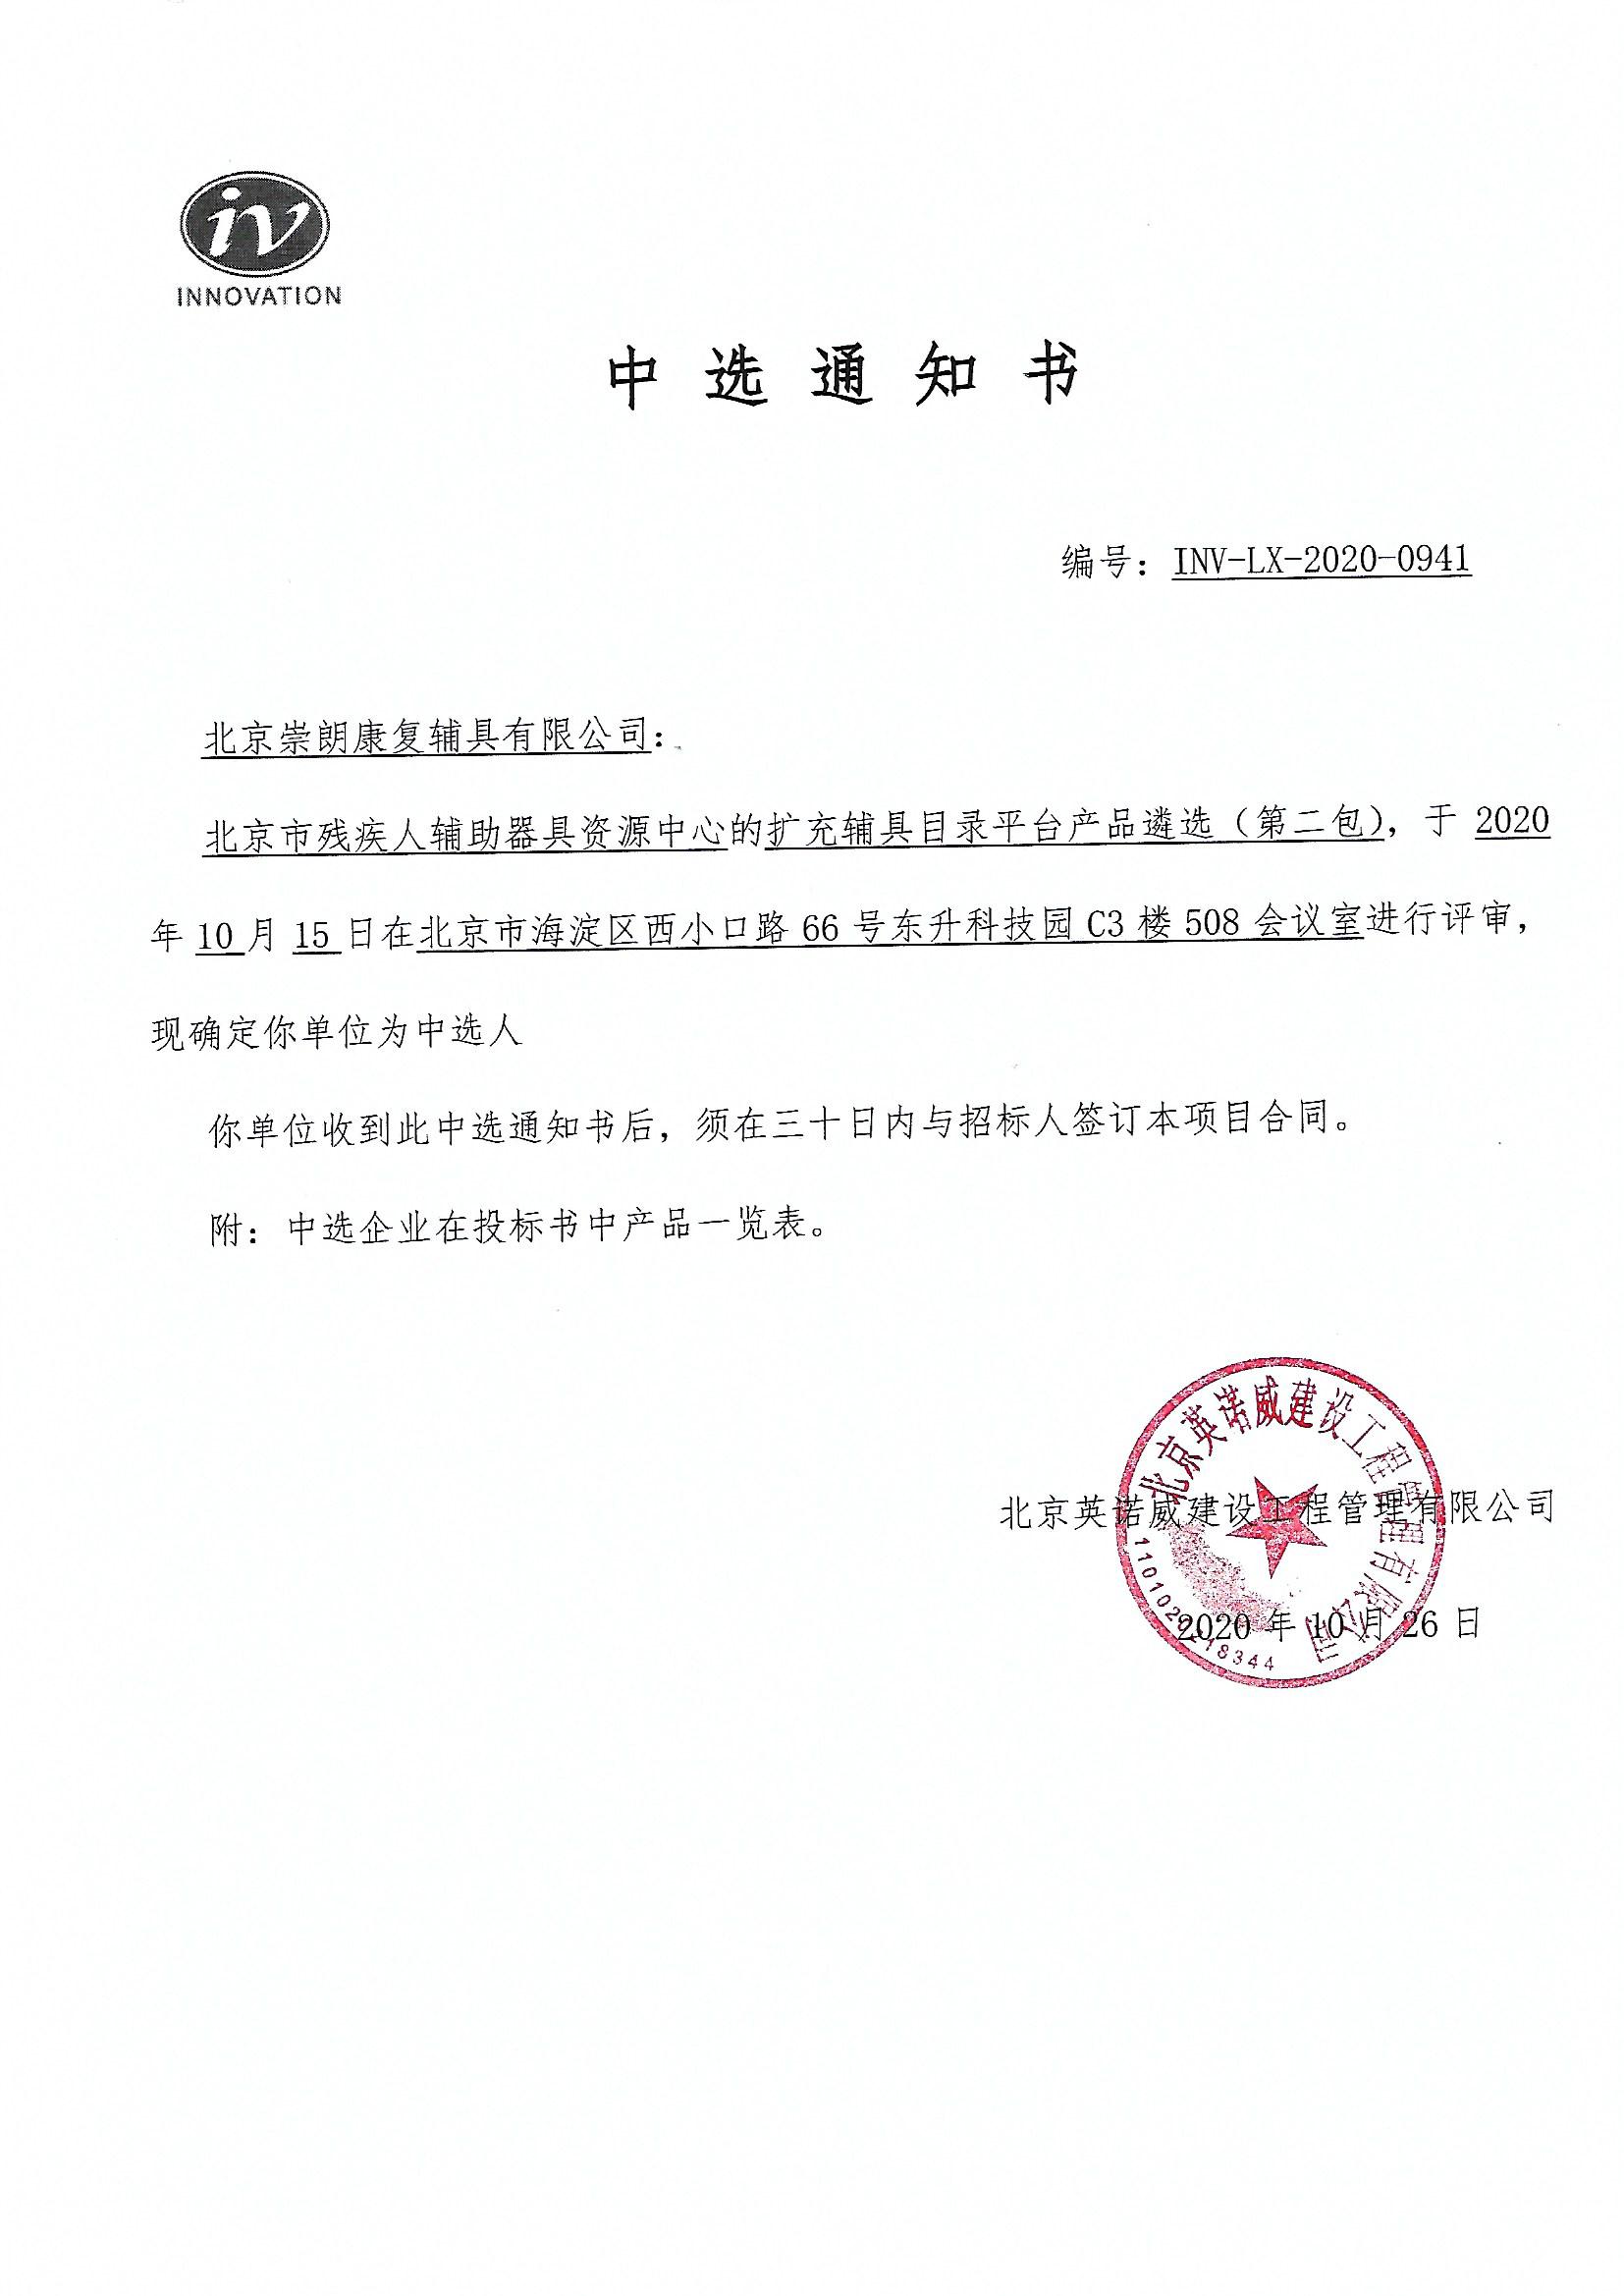 我公司入选为北京市残疾人辅助器具资源中心假肢配置供应商